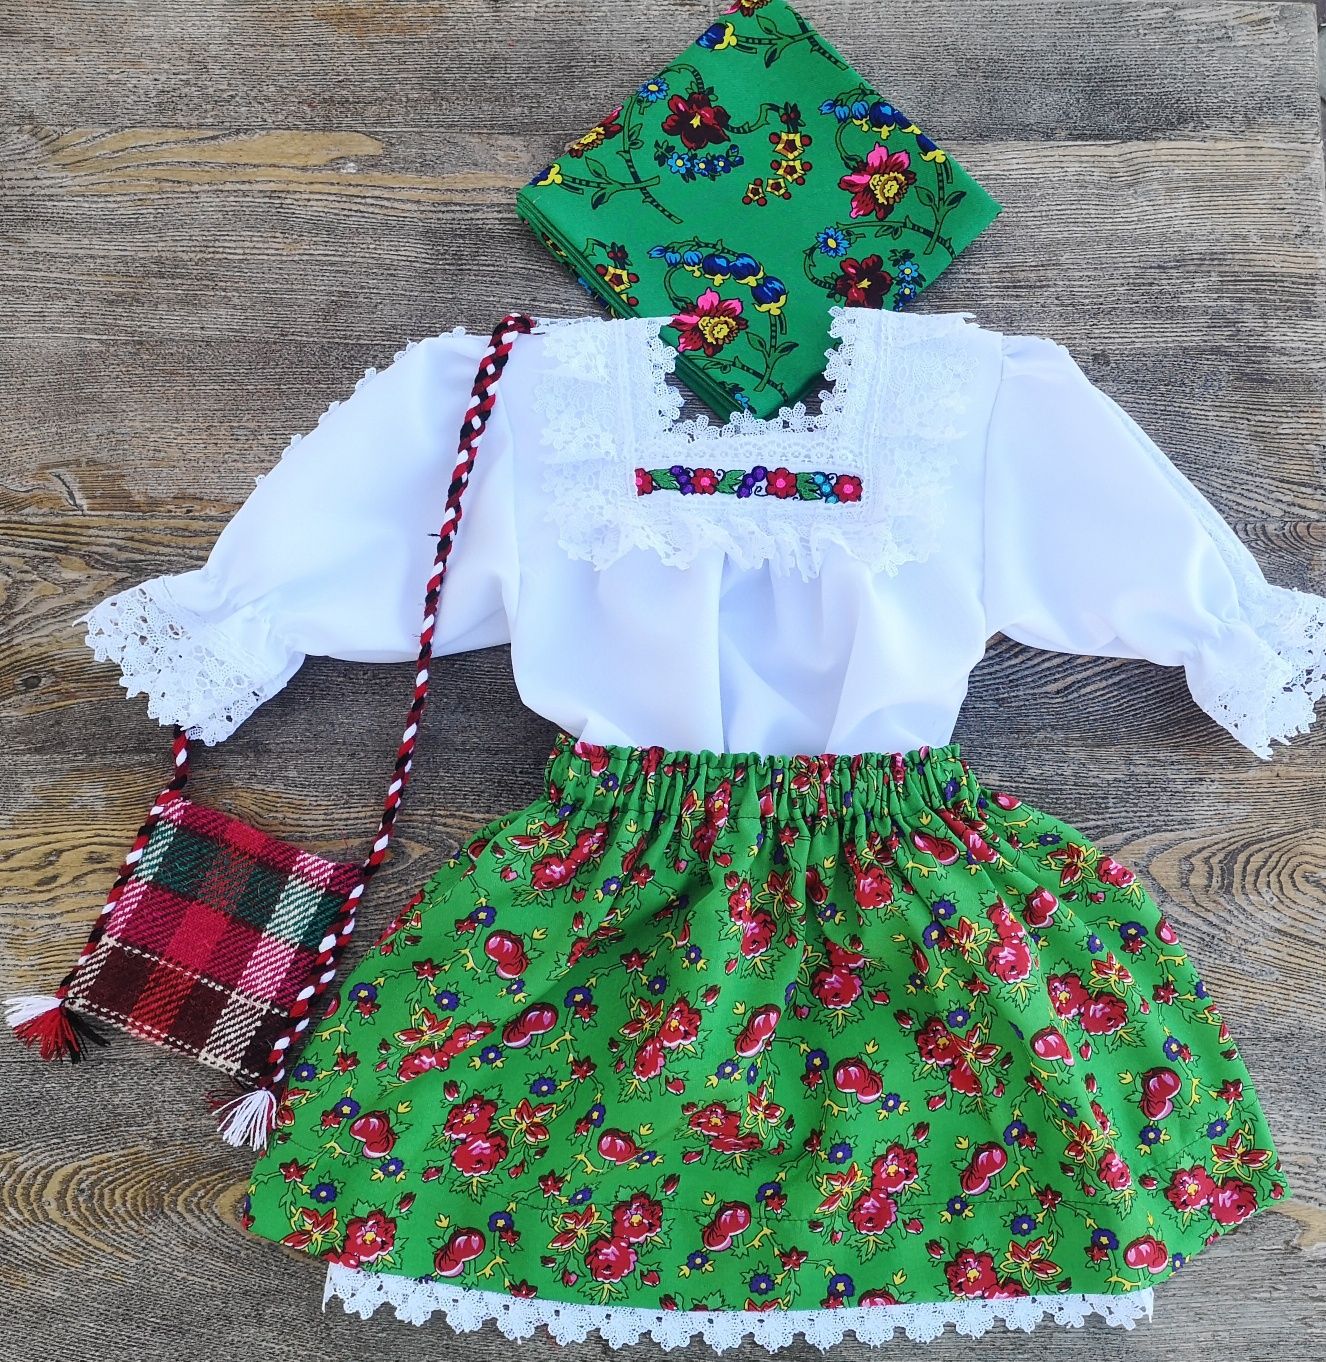 Costum popular pentru fetite de Maramures